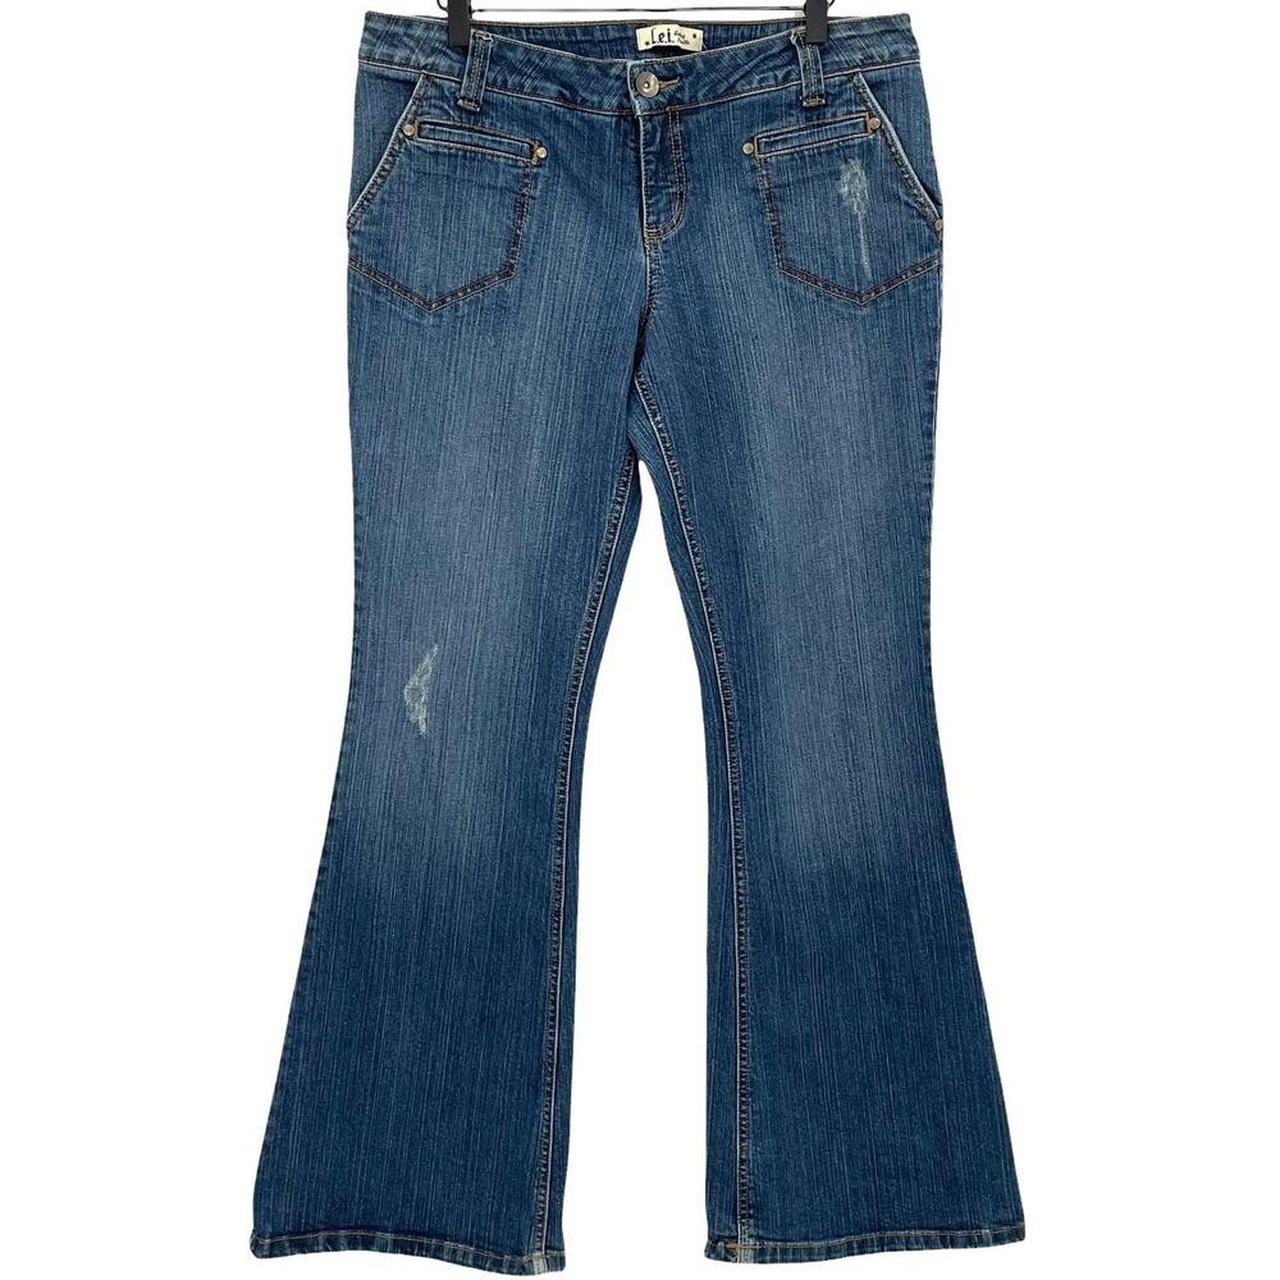 Vintage Y2K l.e.i. low rise flare jeans in dark wash - Depop